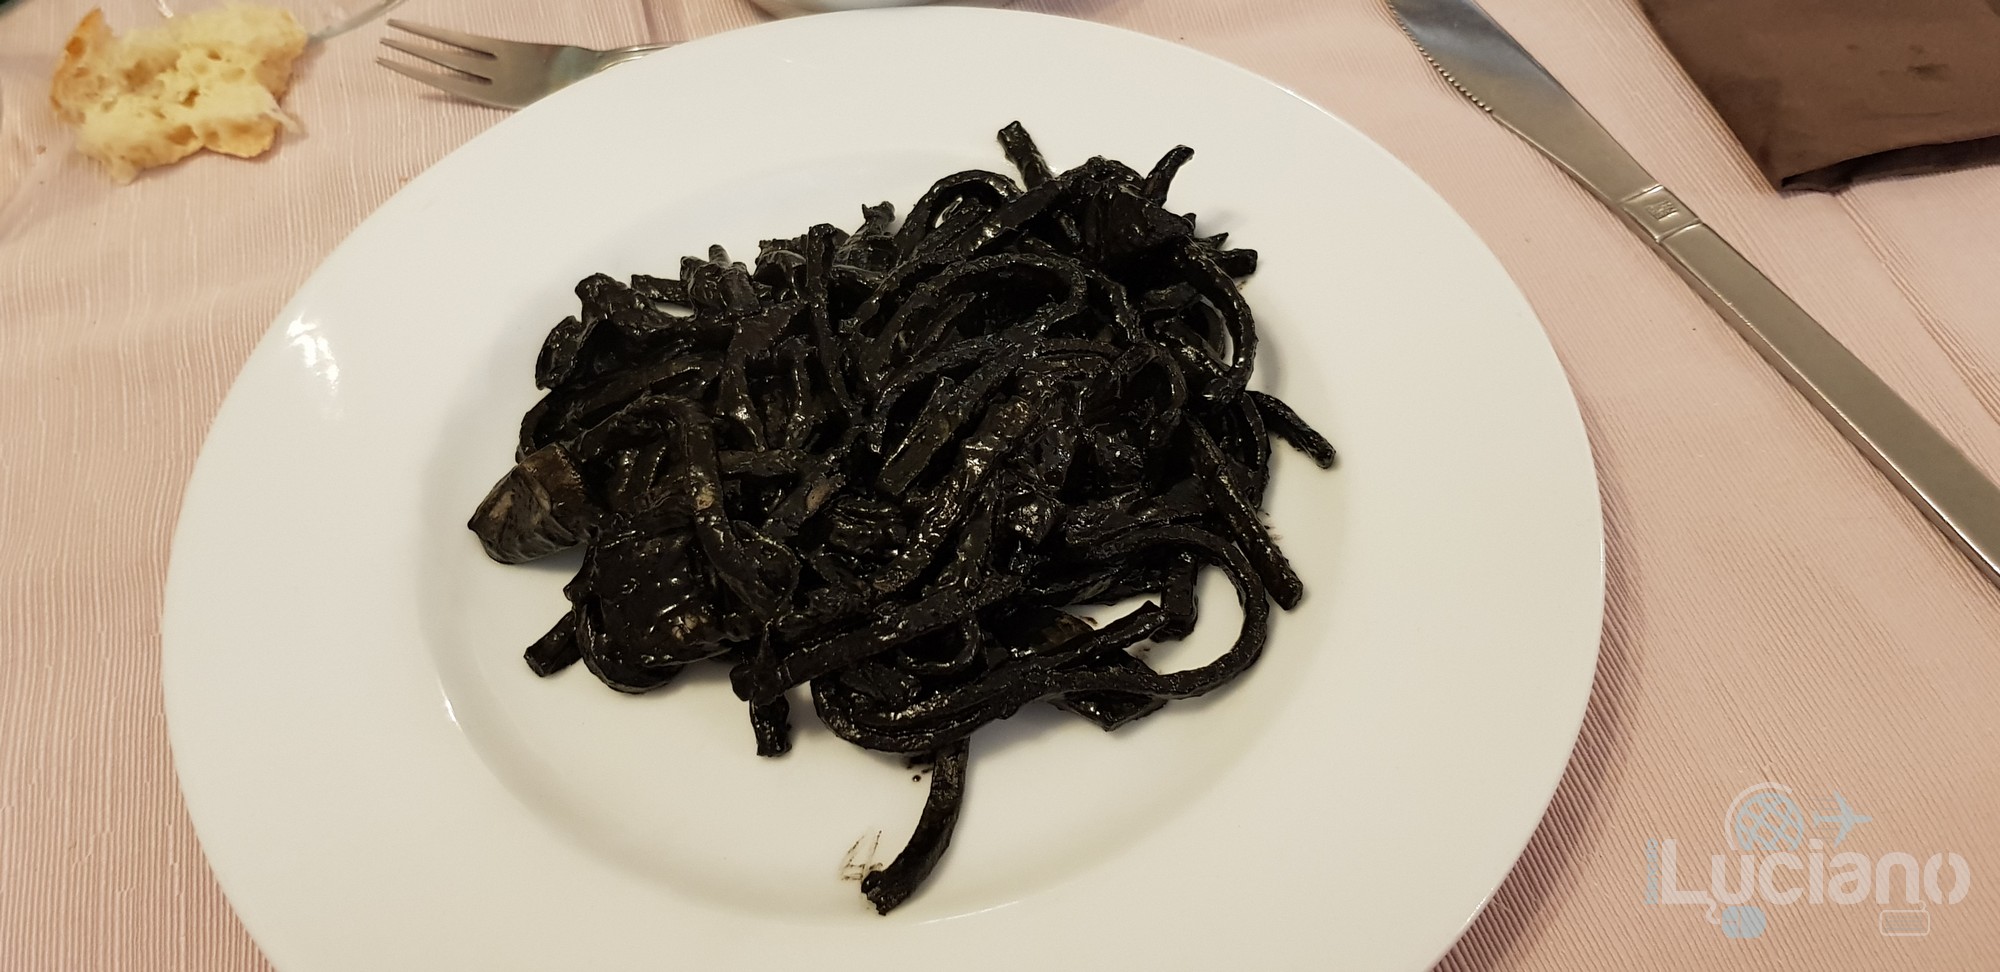 Trattoria Catania Ruffiana - Pasta al nero di seppie